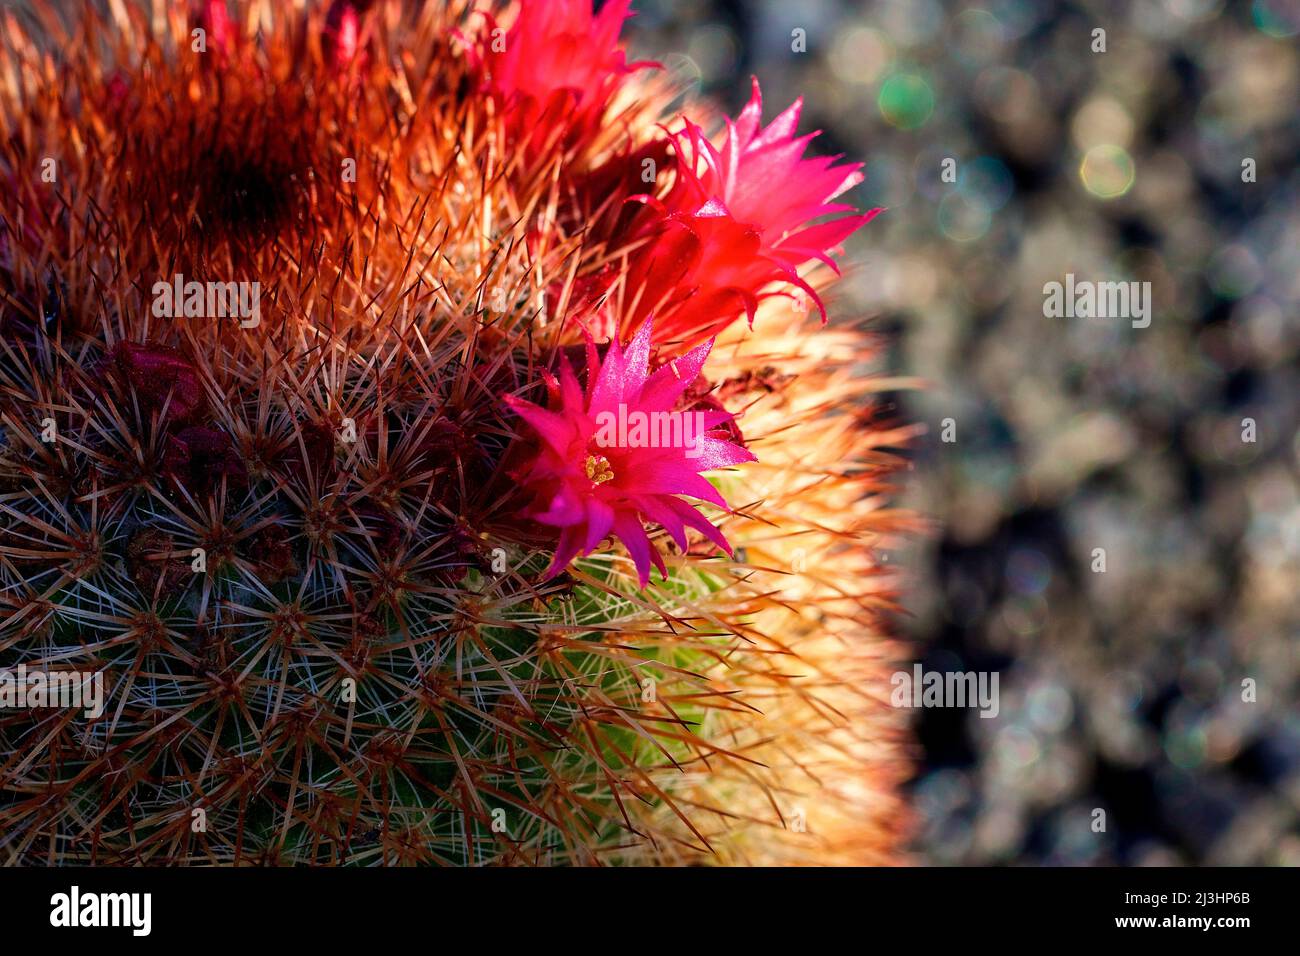 Îles Canaries, Lanzarote, île volcanique, jardin de Cactus, jardin de cactus, Conçu par Cesar Manrique, photo macro d'un cactus aux fleurs rouges Banque D'Images